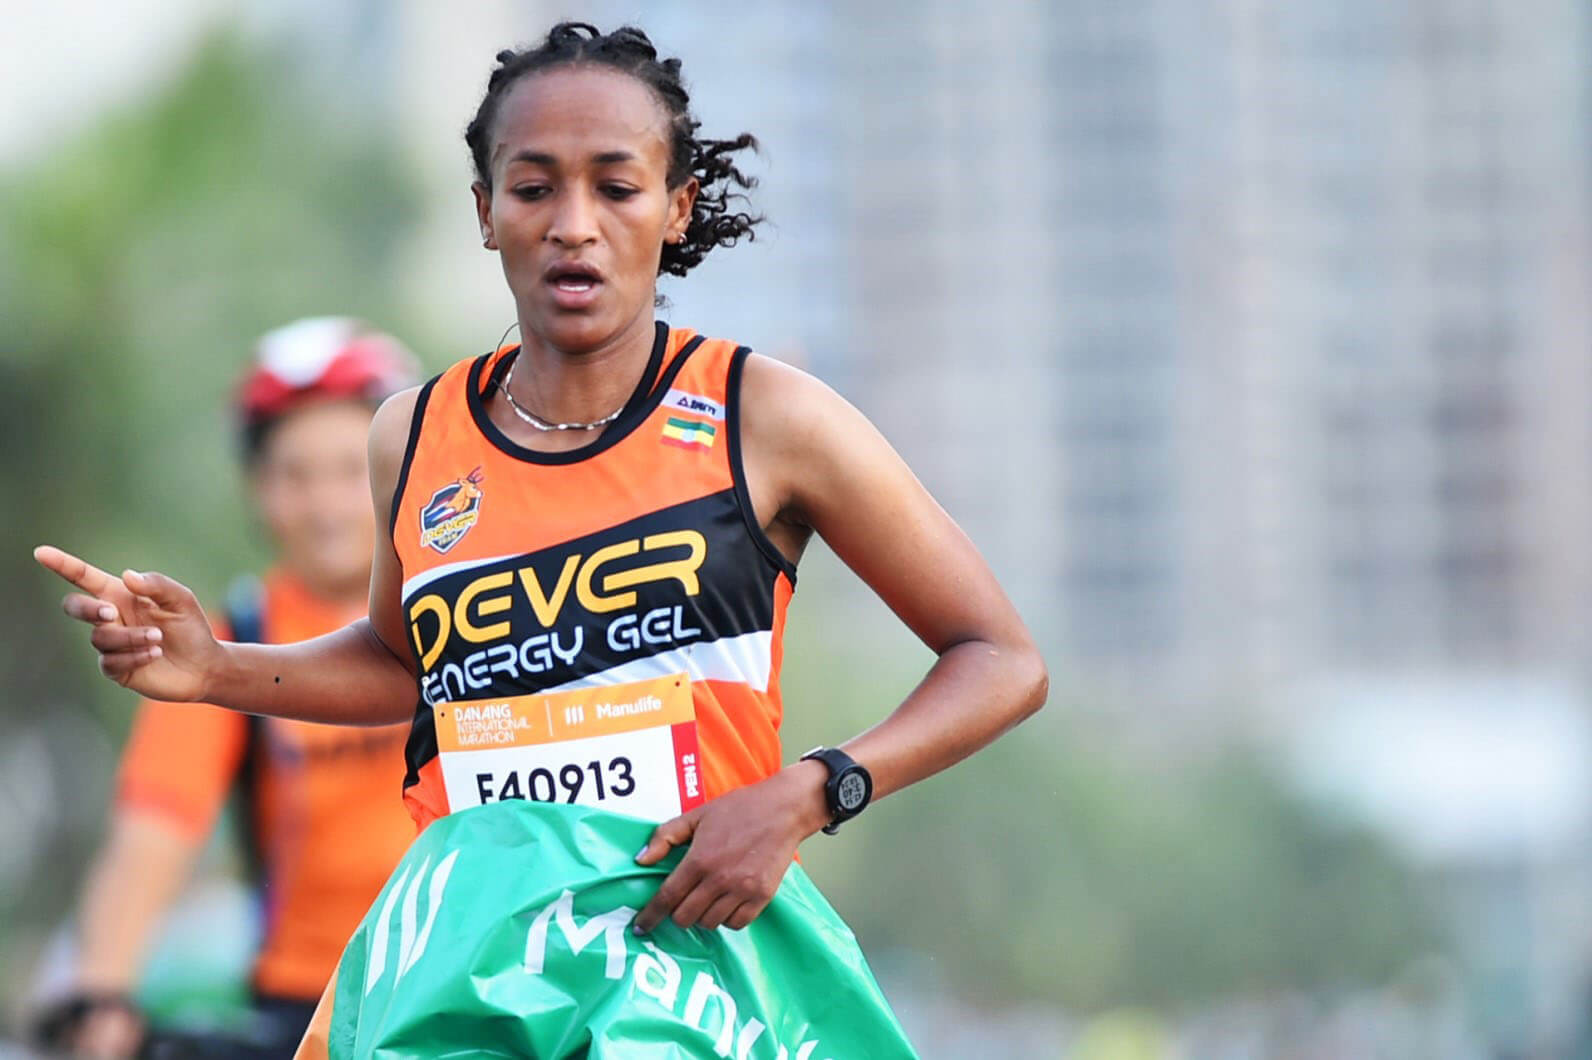   VĐV Birehan Marta Tinsae người Ethiopia giành chức vô địch với thành tích 2:58:26